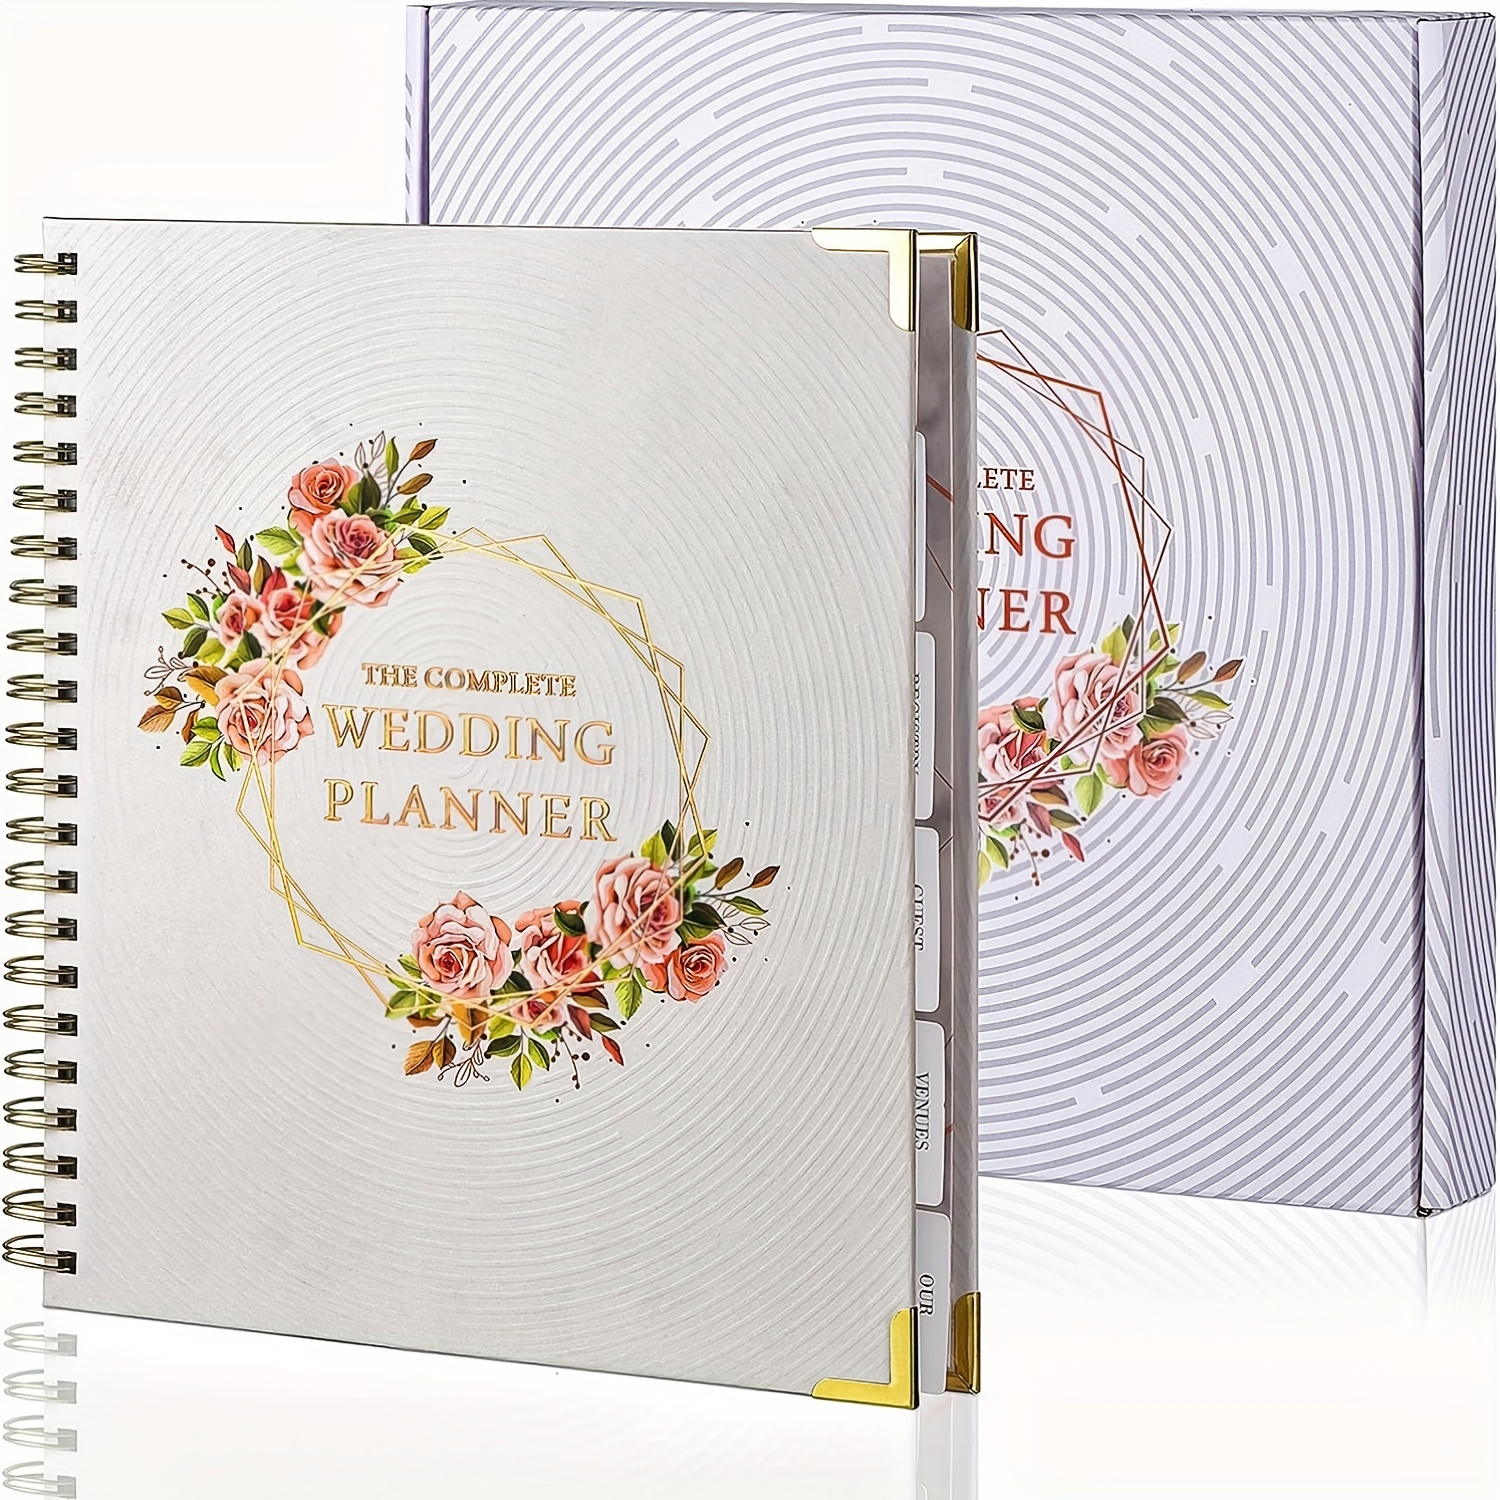 Cuadernos para organizar una boda preciosa - Foto 1